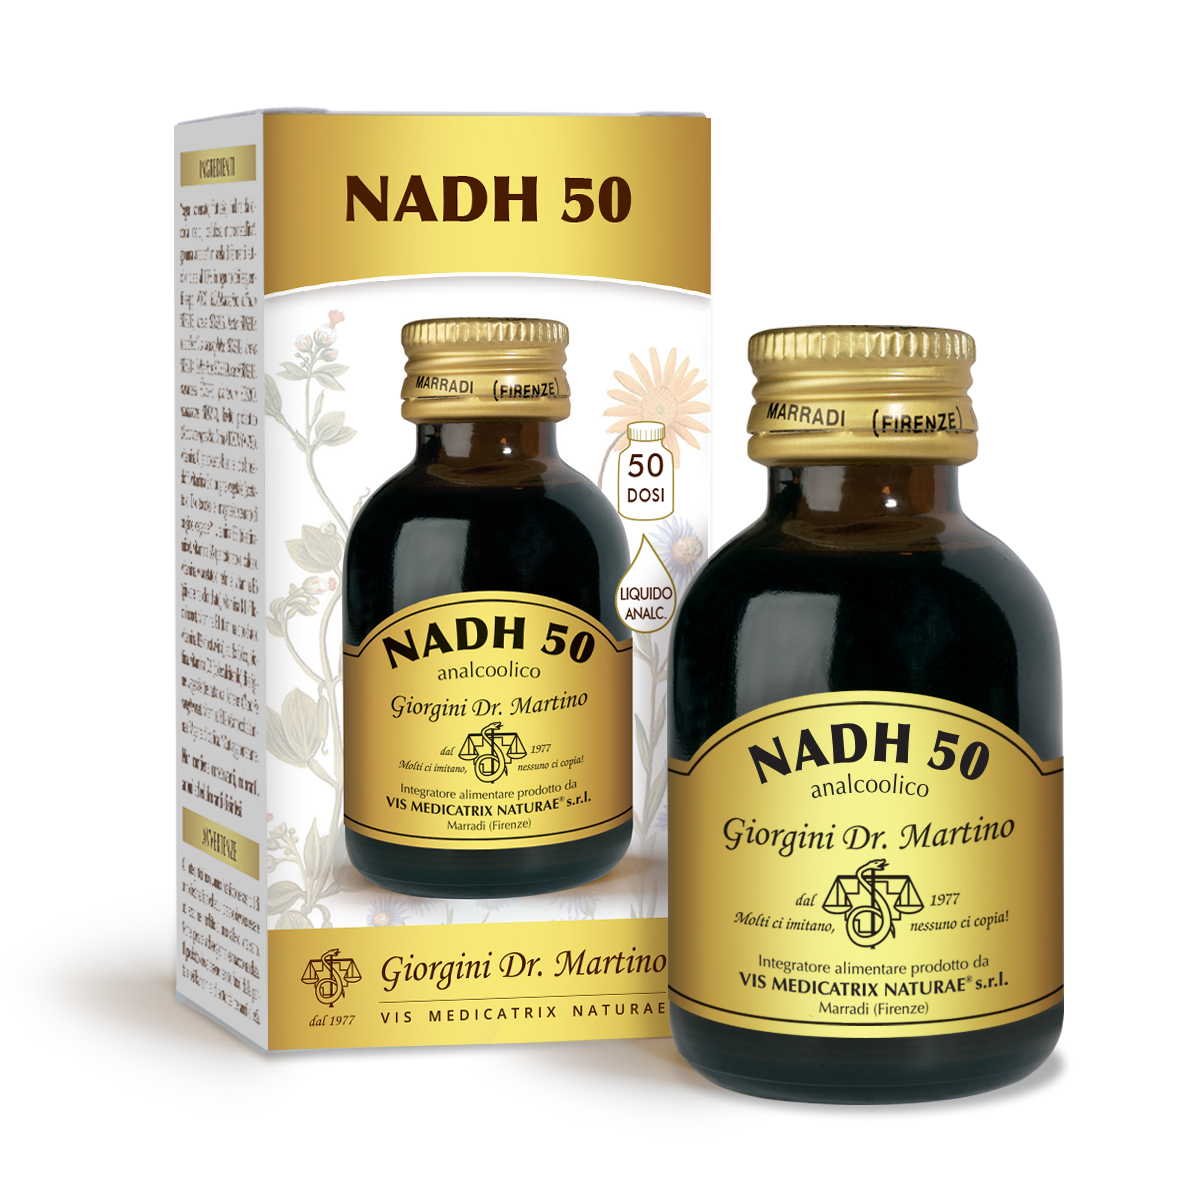 NADH 50